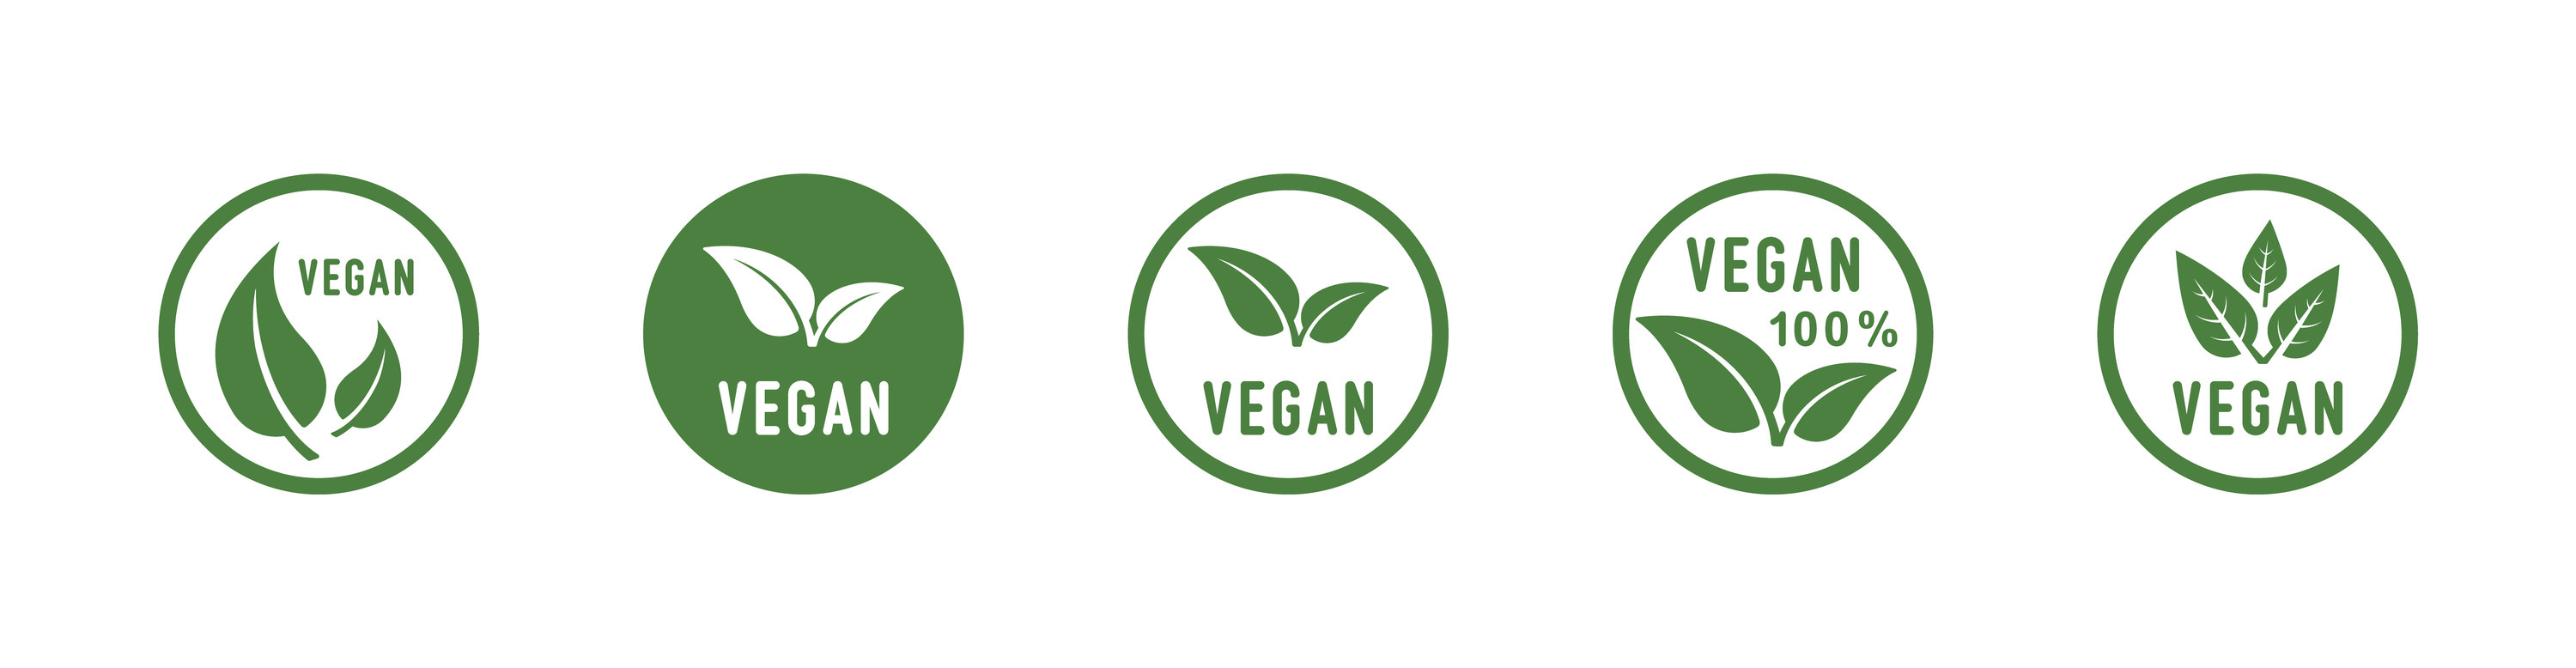 Vegan symbols